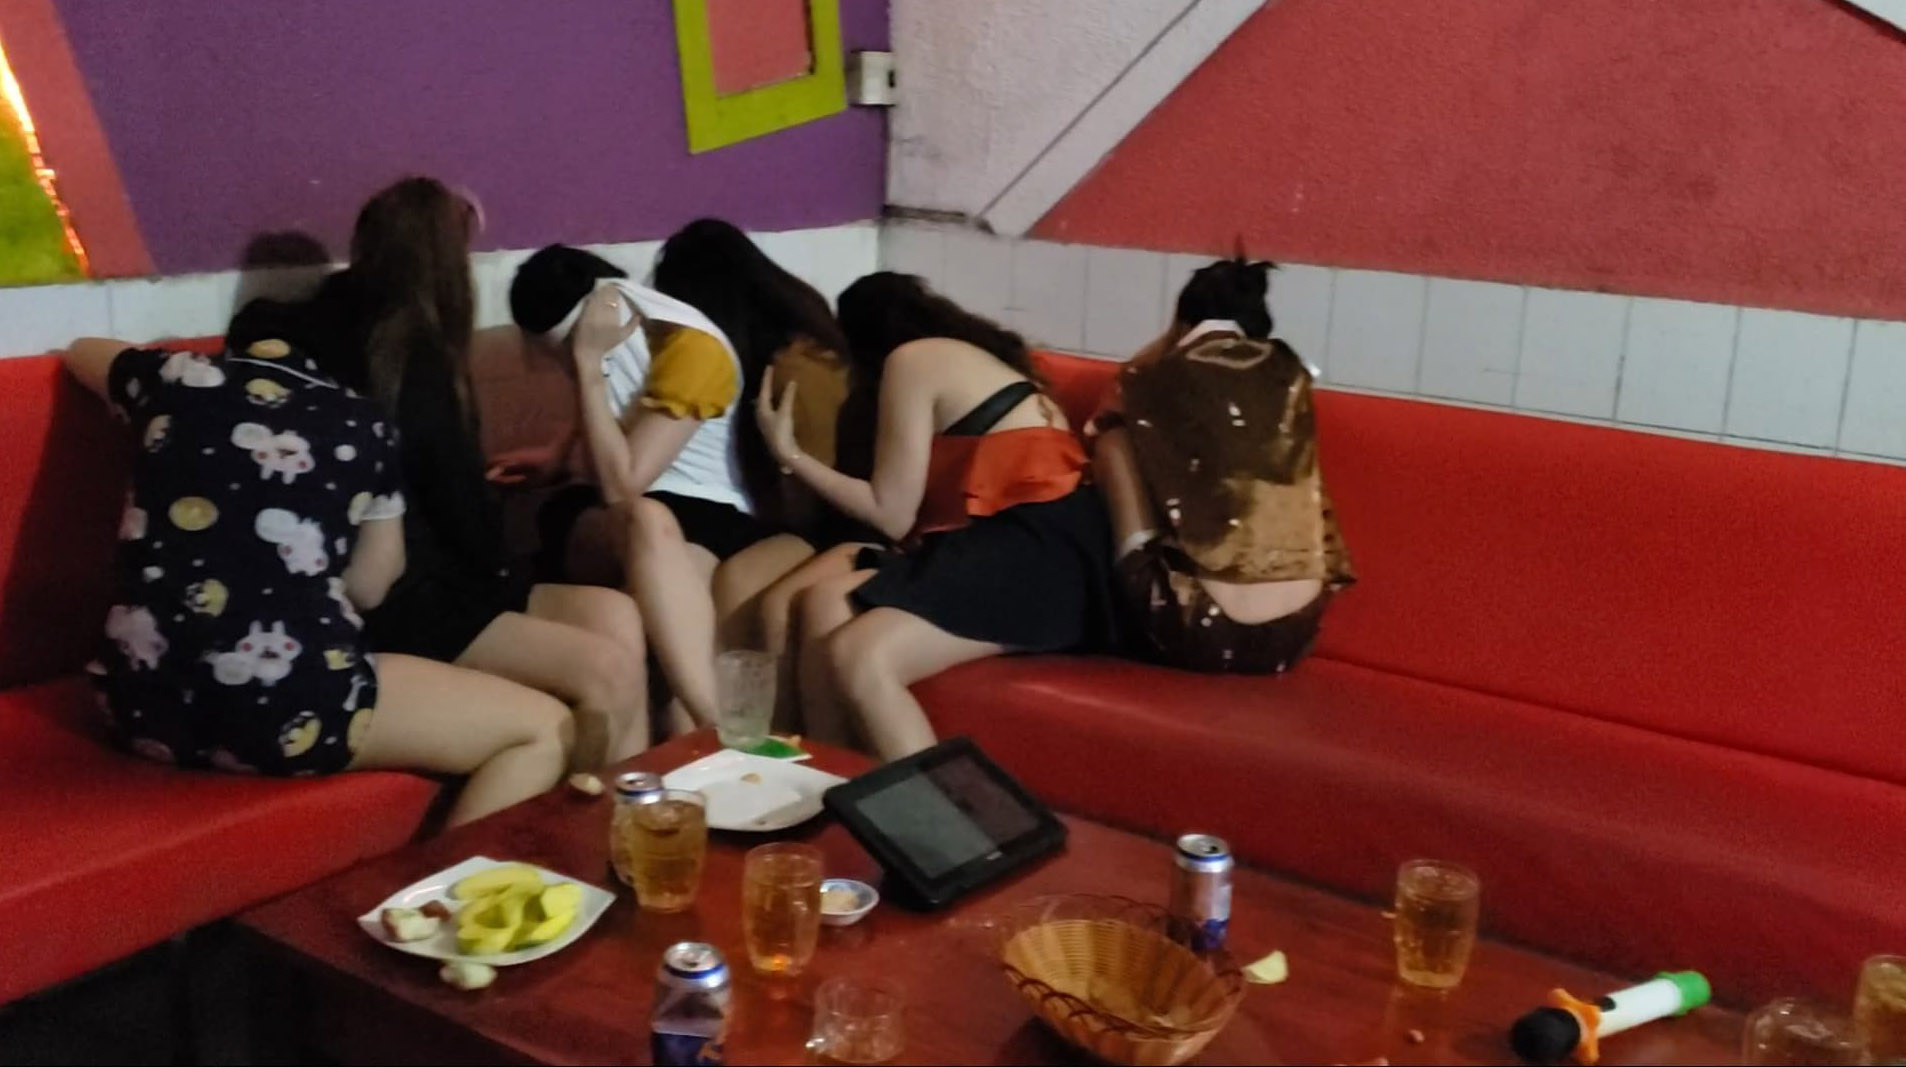 Đột kích quán karaoke, công an bắt quả tang 7 nữ tiếp viên khoả thân phục vụ khách - Ảnh 1.